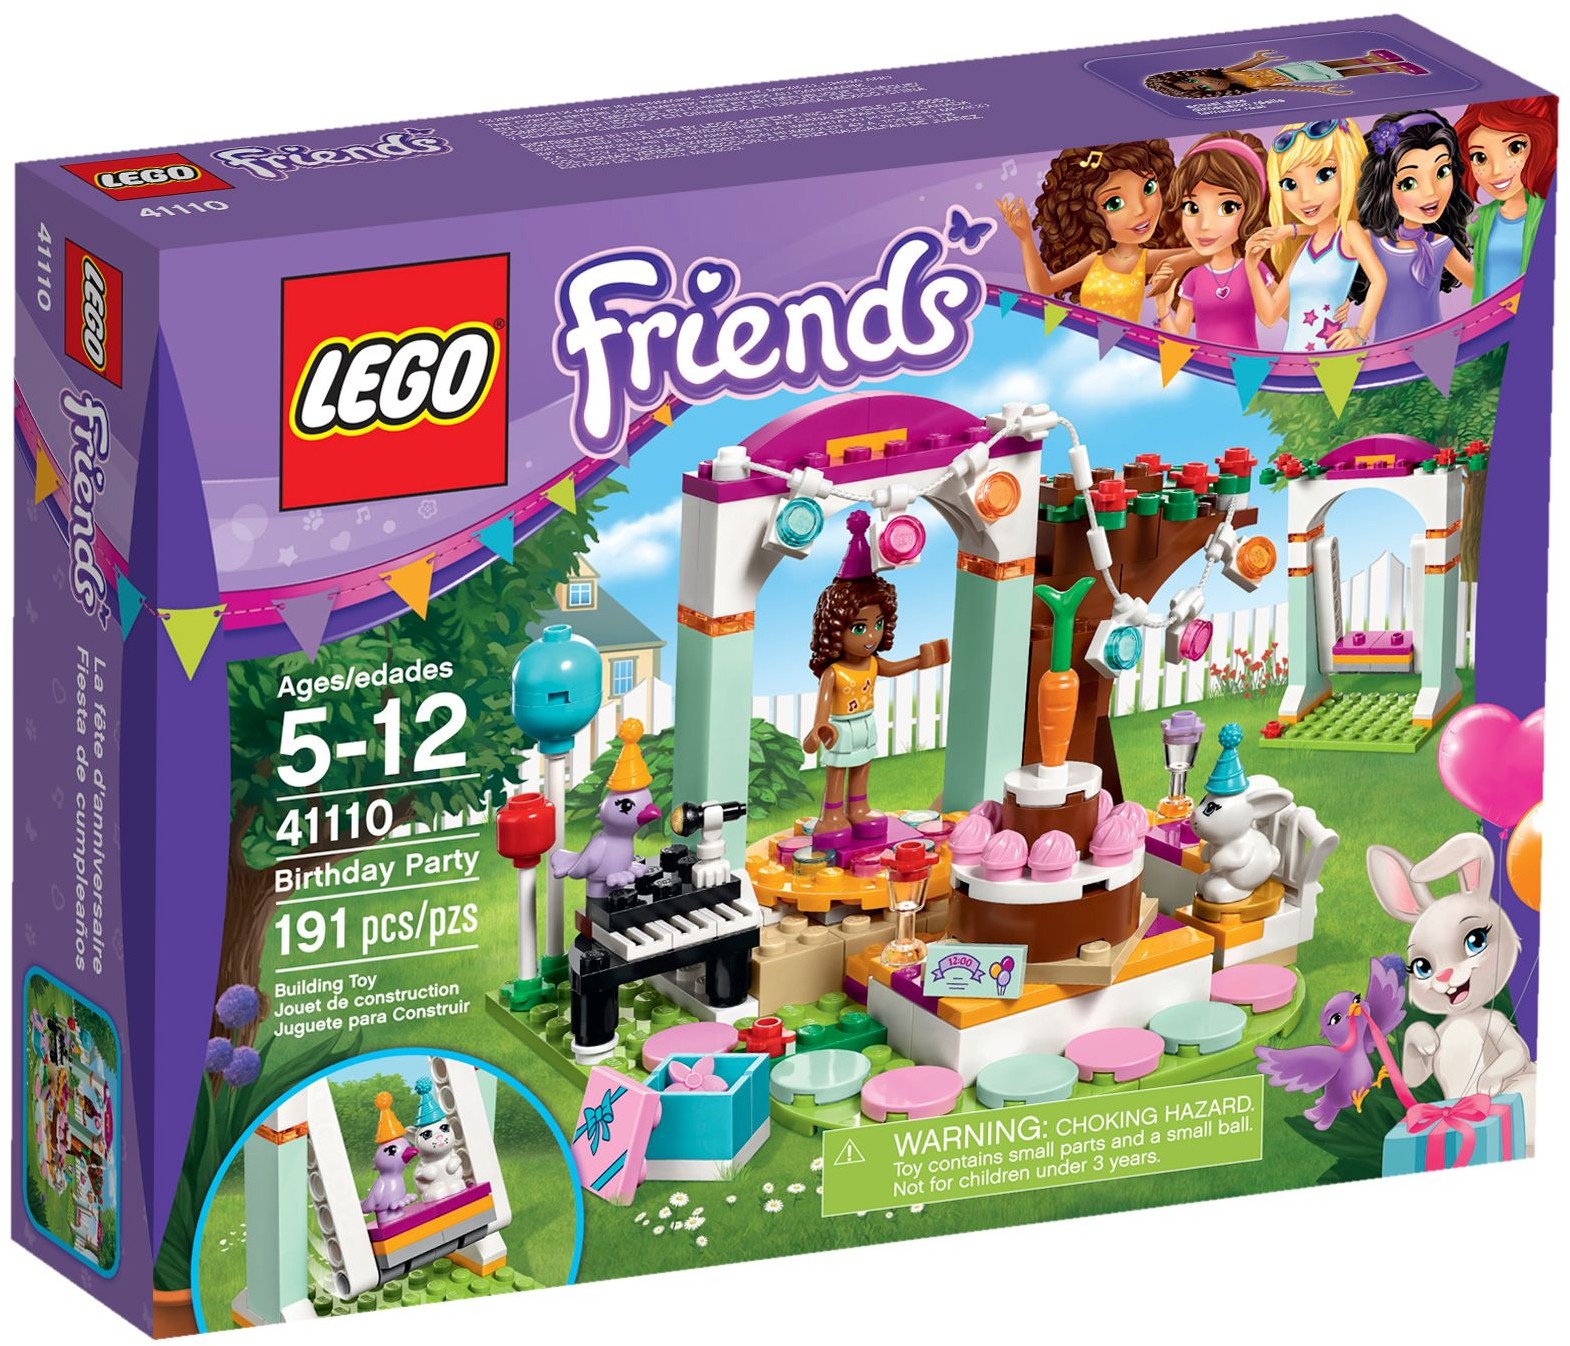 LEGO Friends fête ses 10 ans avec une chronologie historique